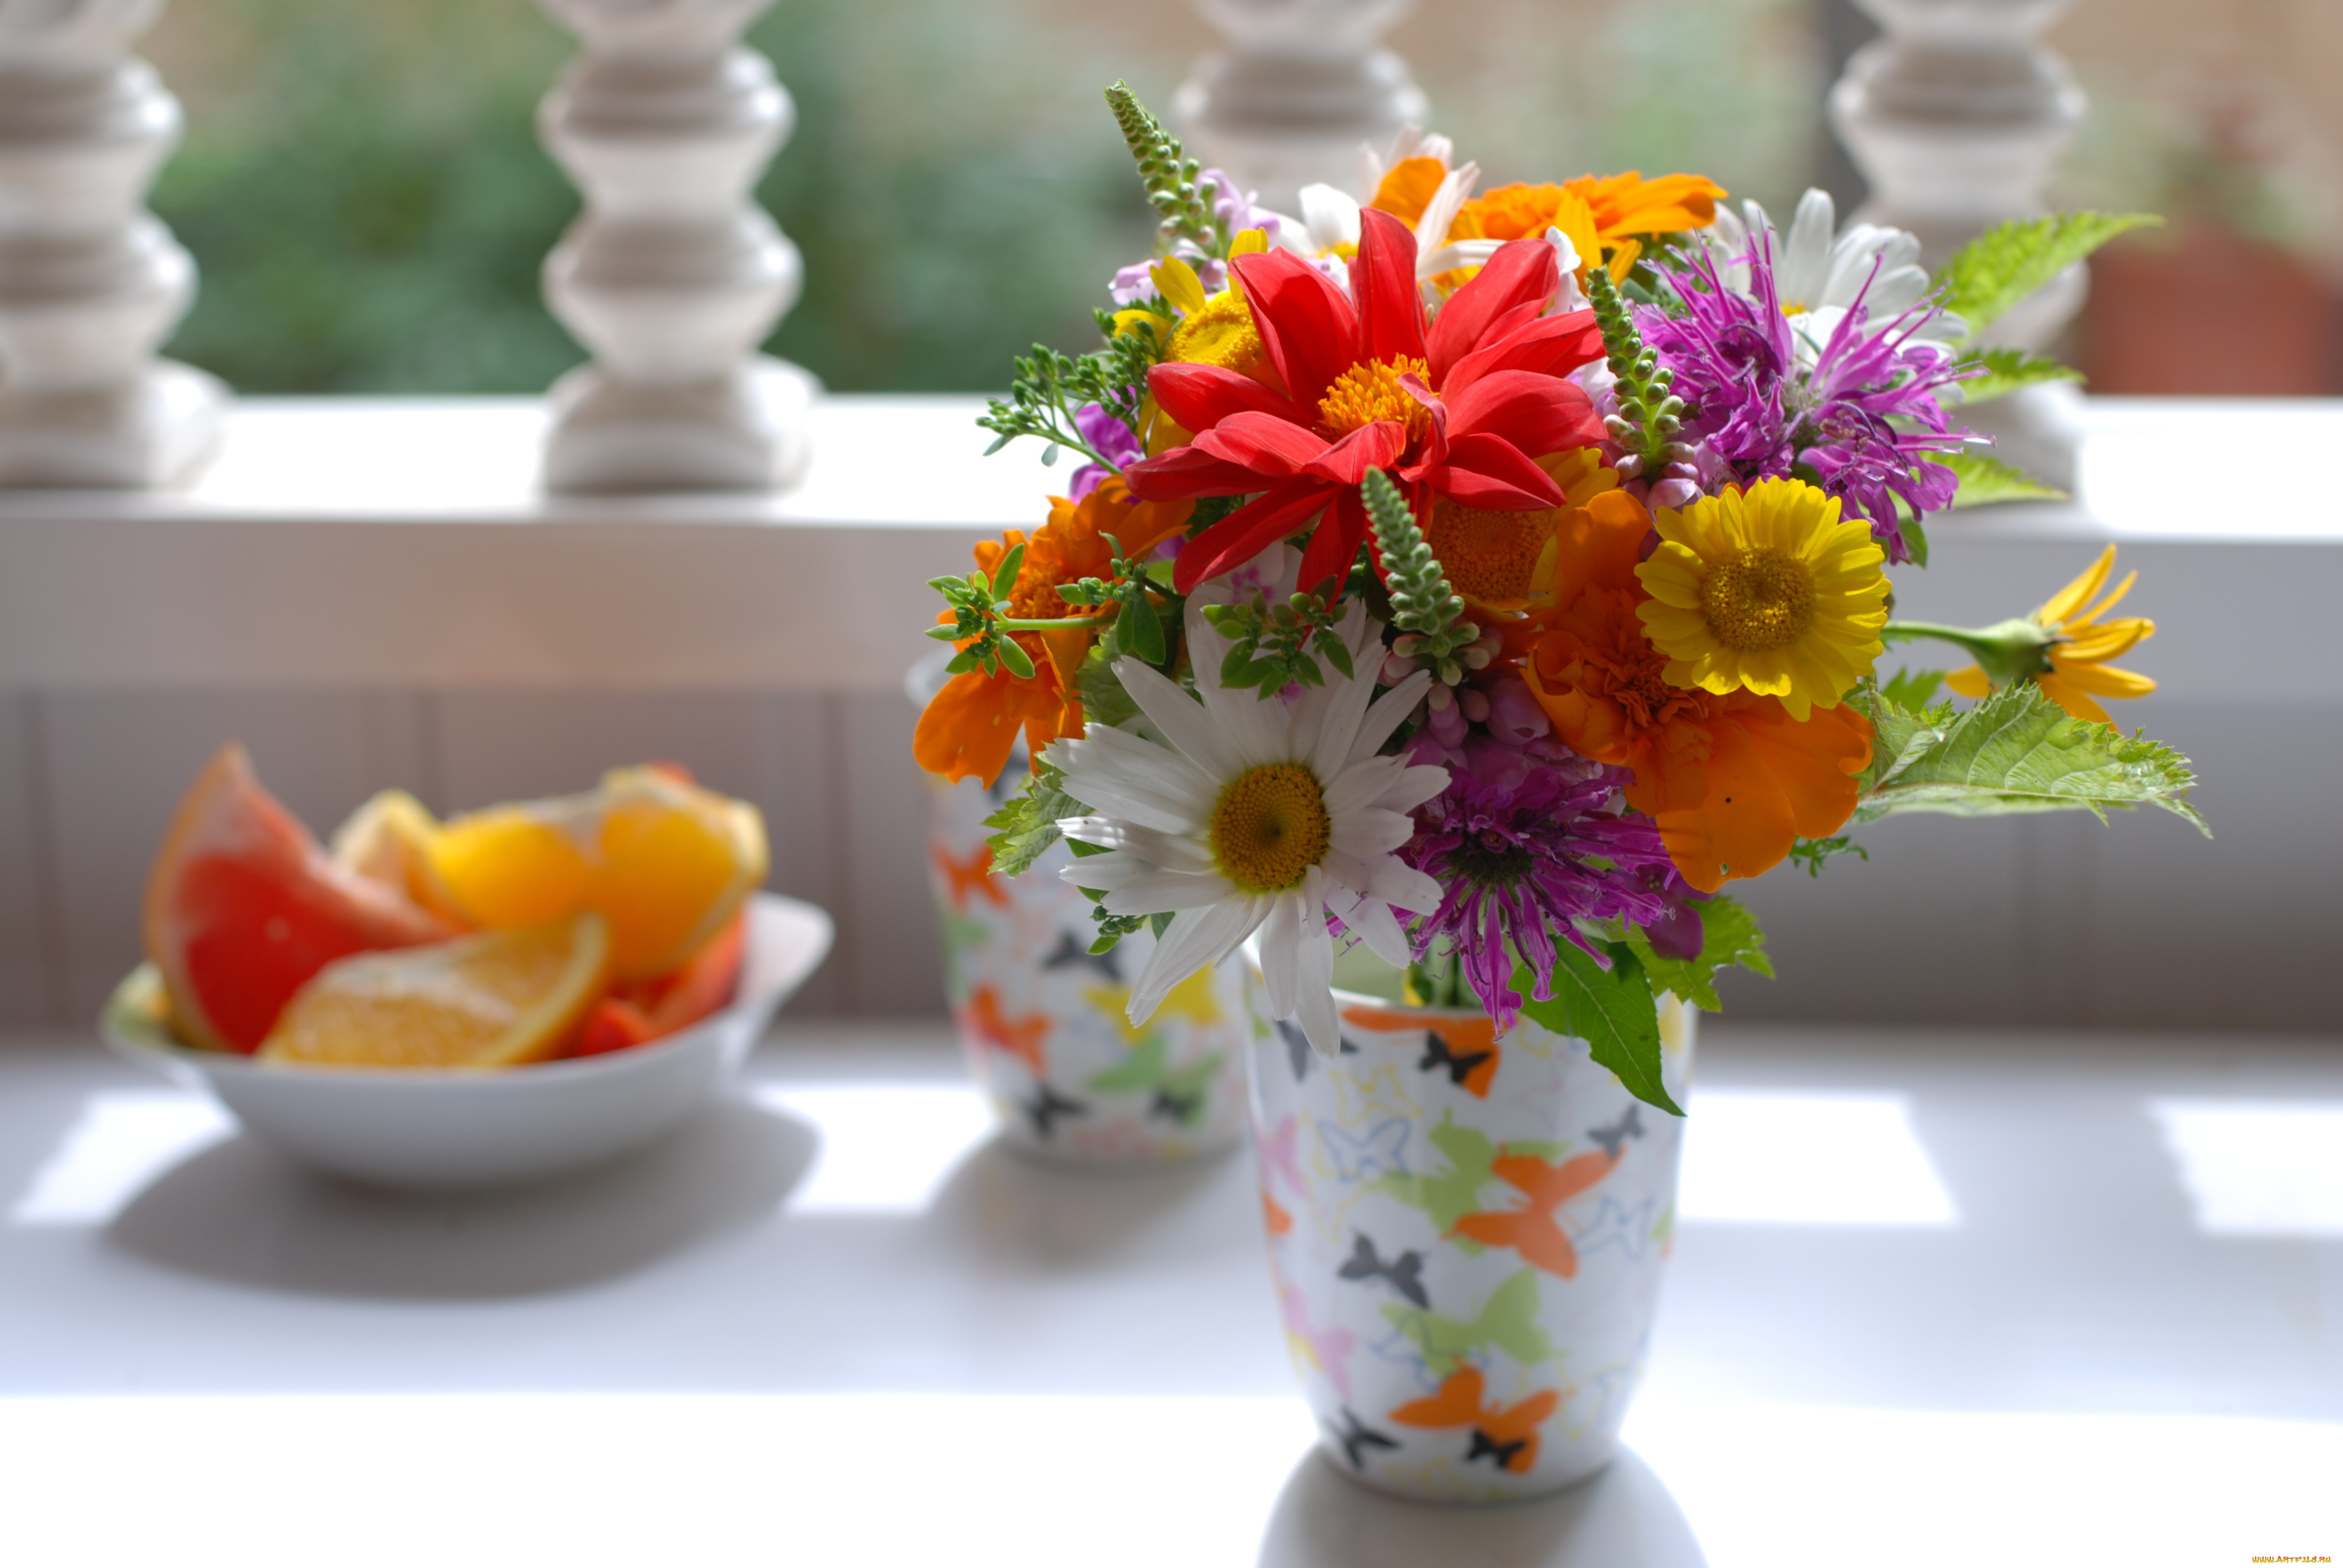 Раннее летнее утро в воздухе чувствуется бодрящая. Летние цветы. Яркие цветы. Букеты в вазах. Цветочки в вазе.